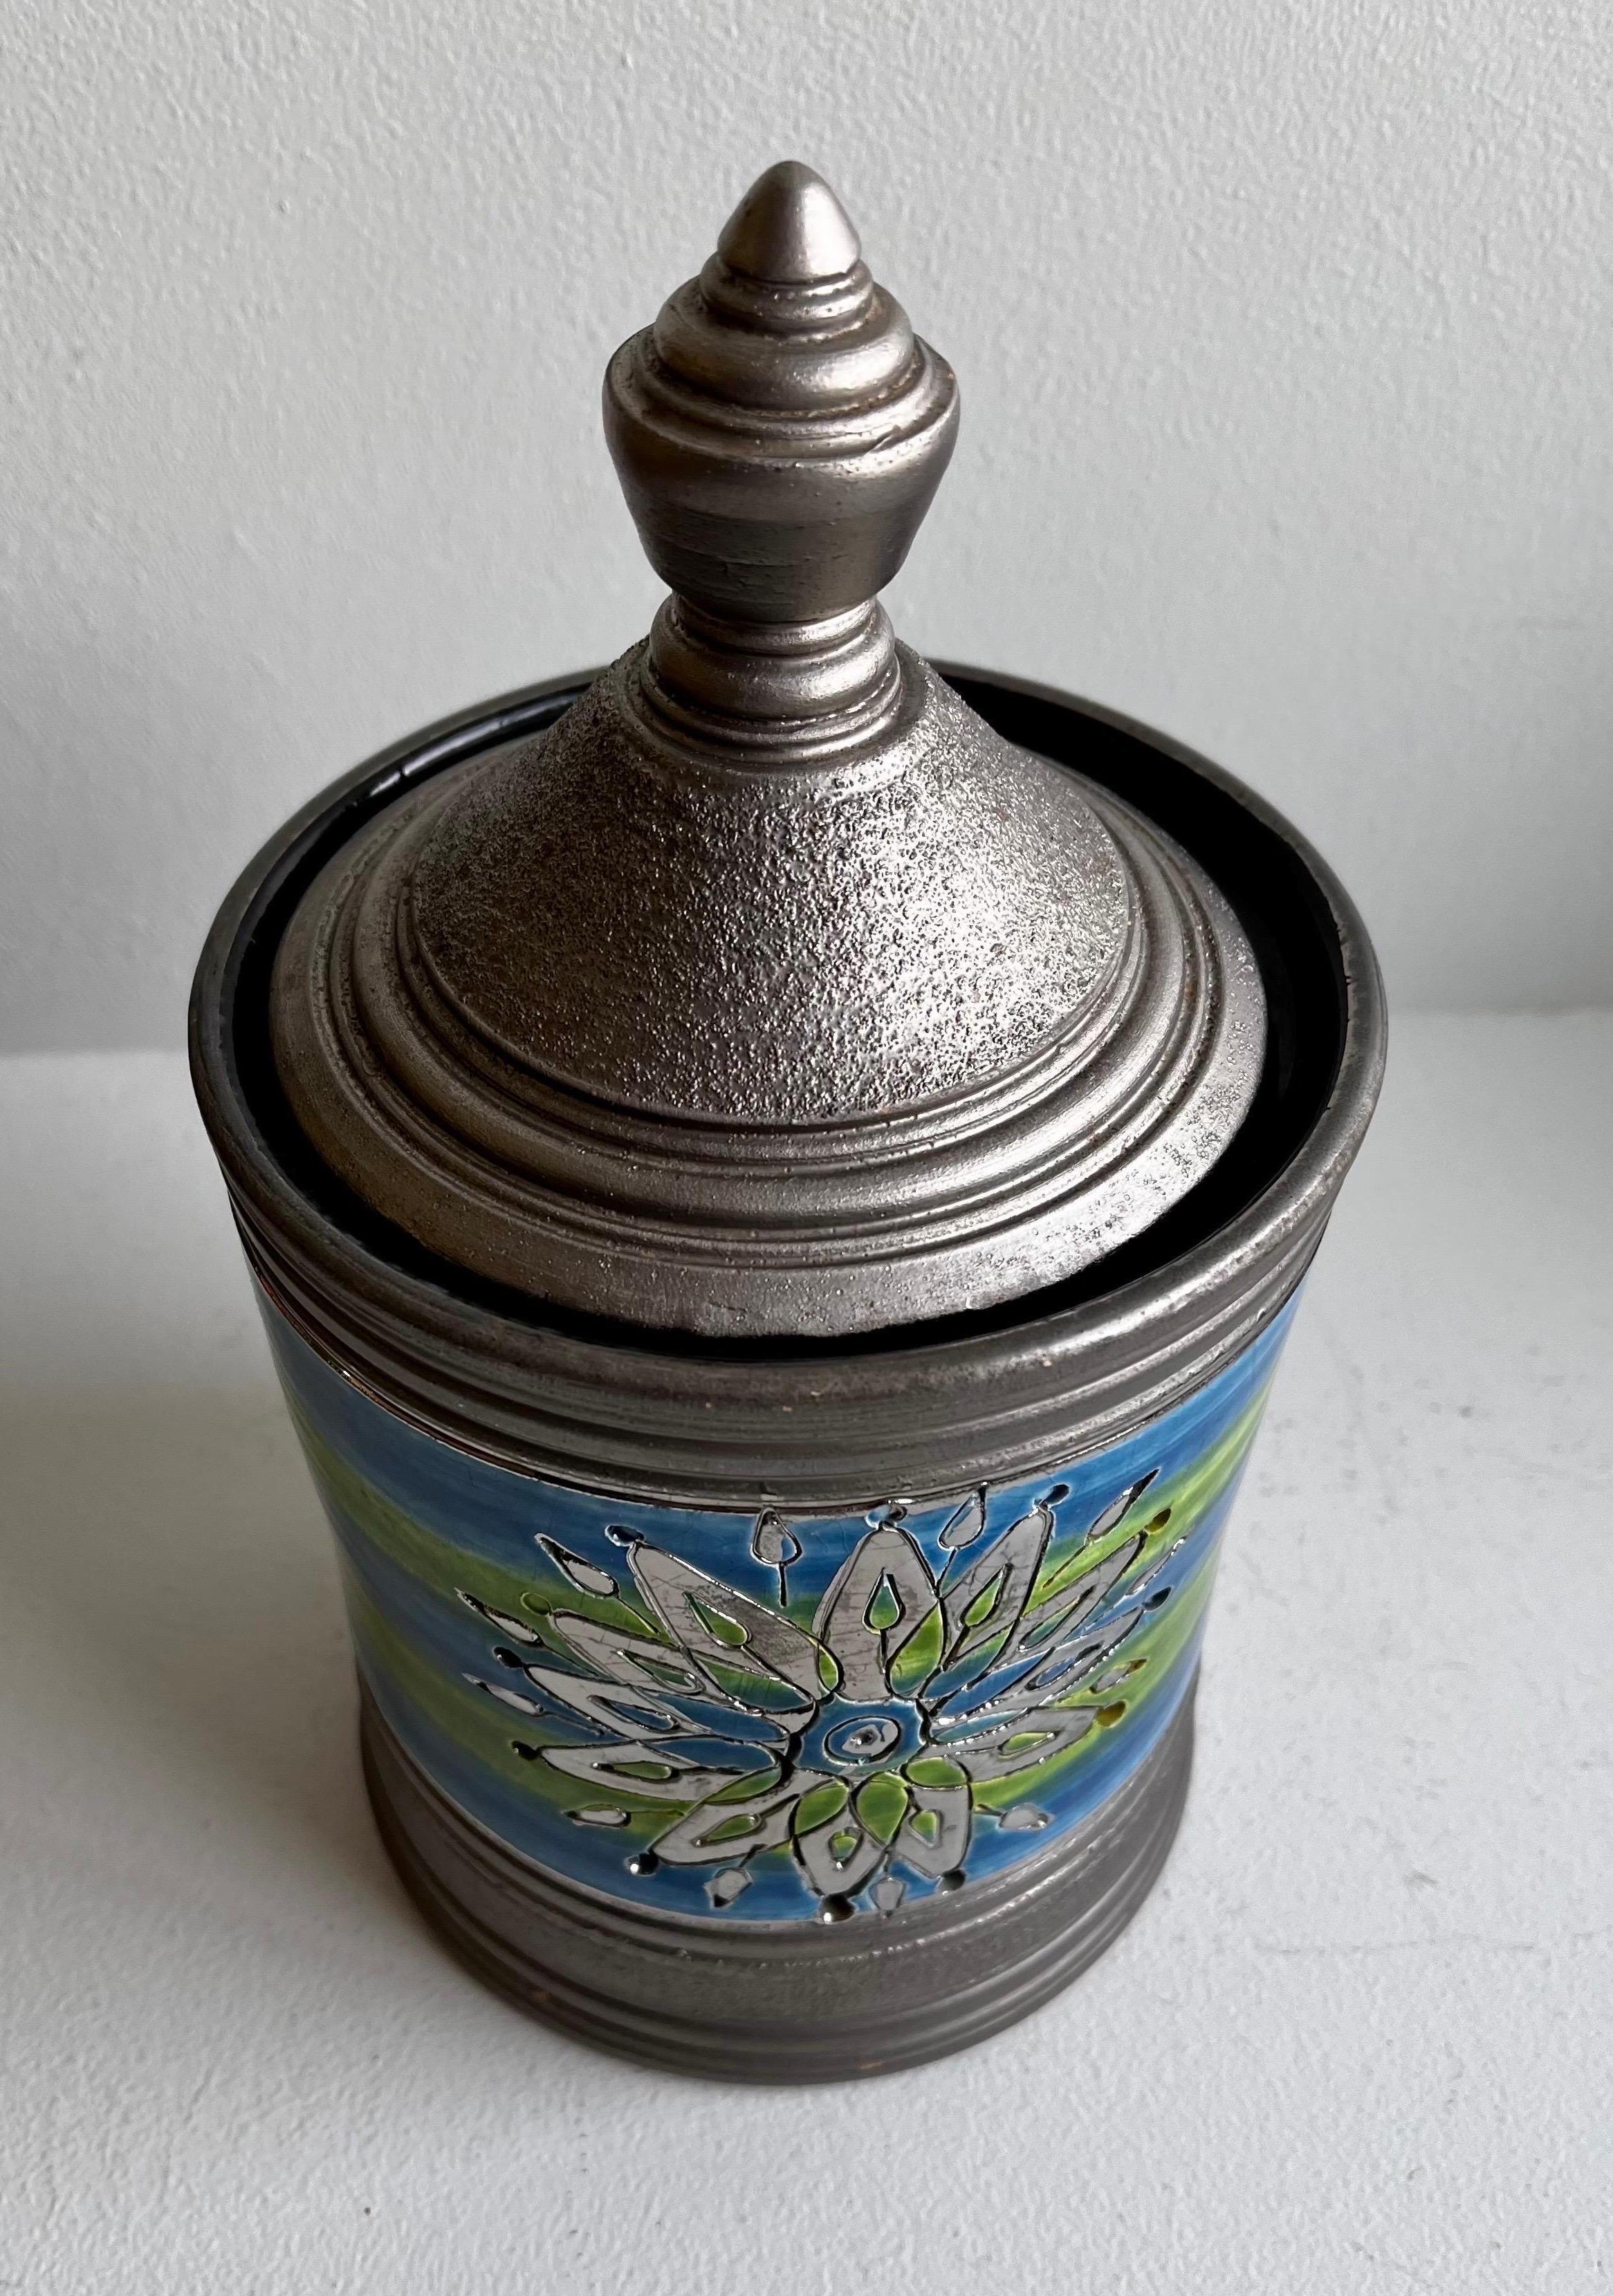 Italian Lidded Jar for Rosenthal Netter, circa 1965

retains the original Rosenthal Netter label on the bottom
